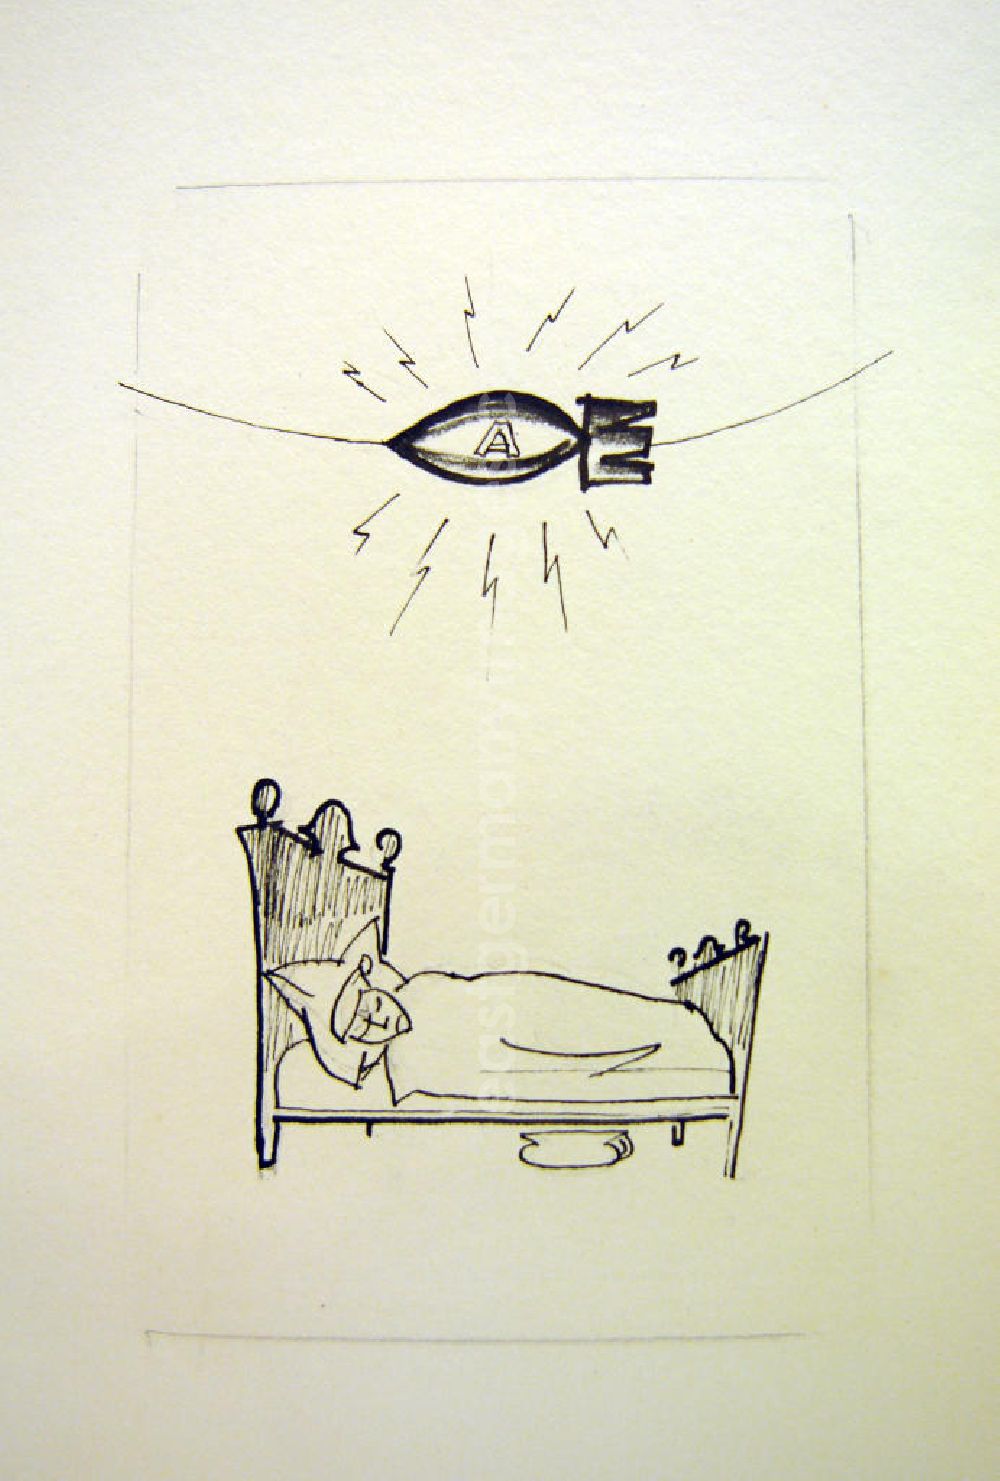 GDR image archive: Berlin - Zeichnung von Herbert Sandberg Bösartige Gedanken 13,2x20,